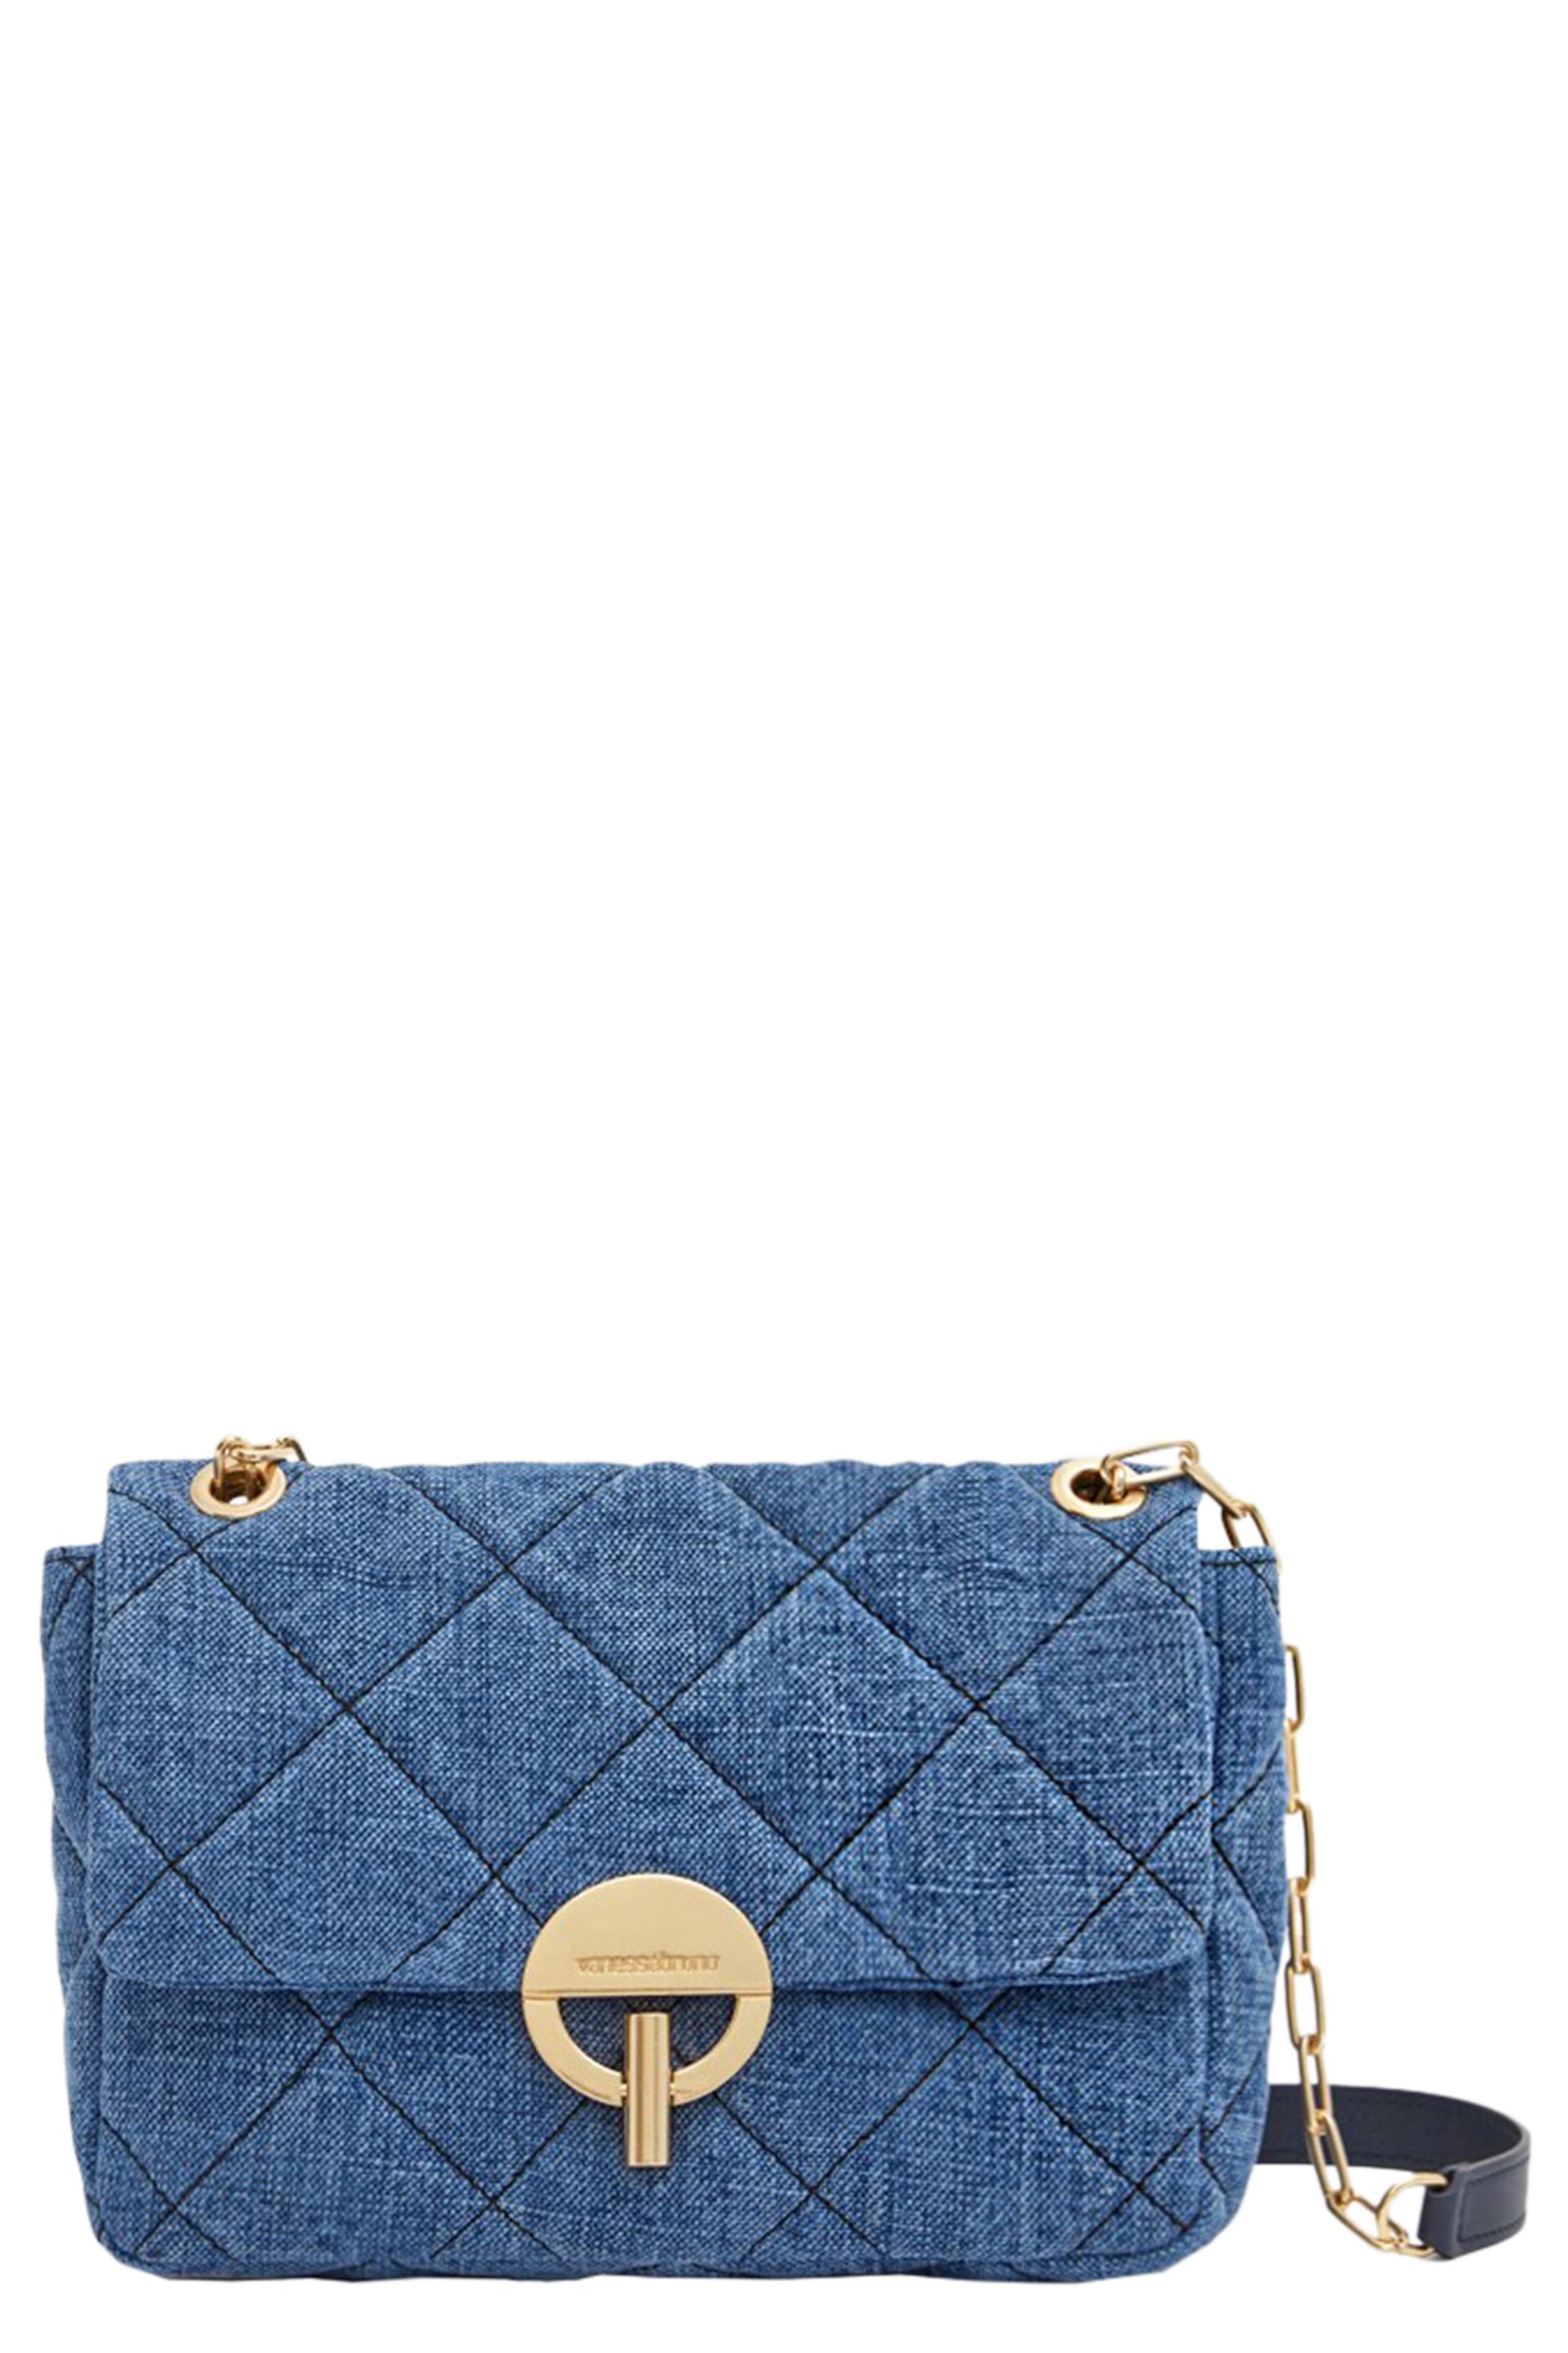 Louis Vuitton Indigo Blue Denim Crop Top Indigo. Size 34